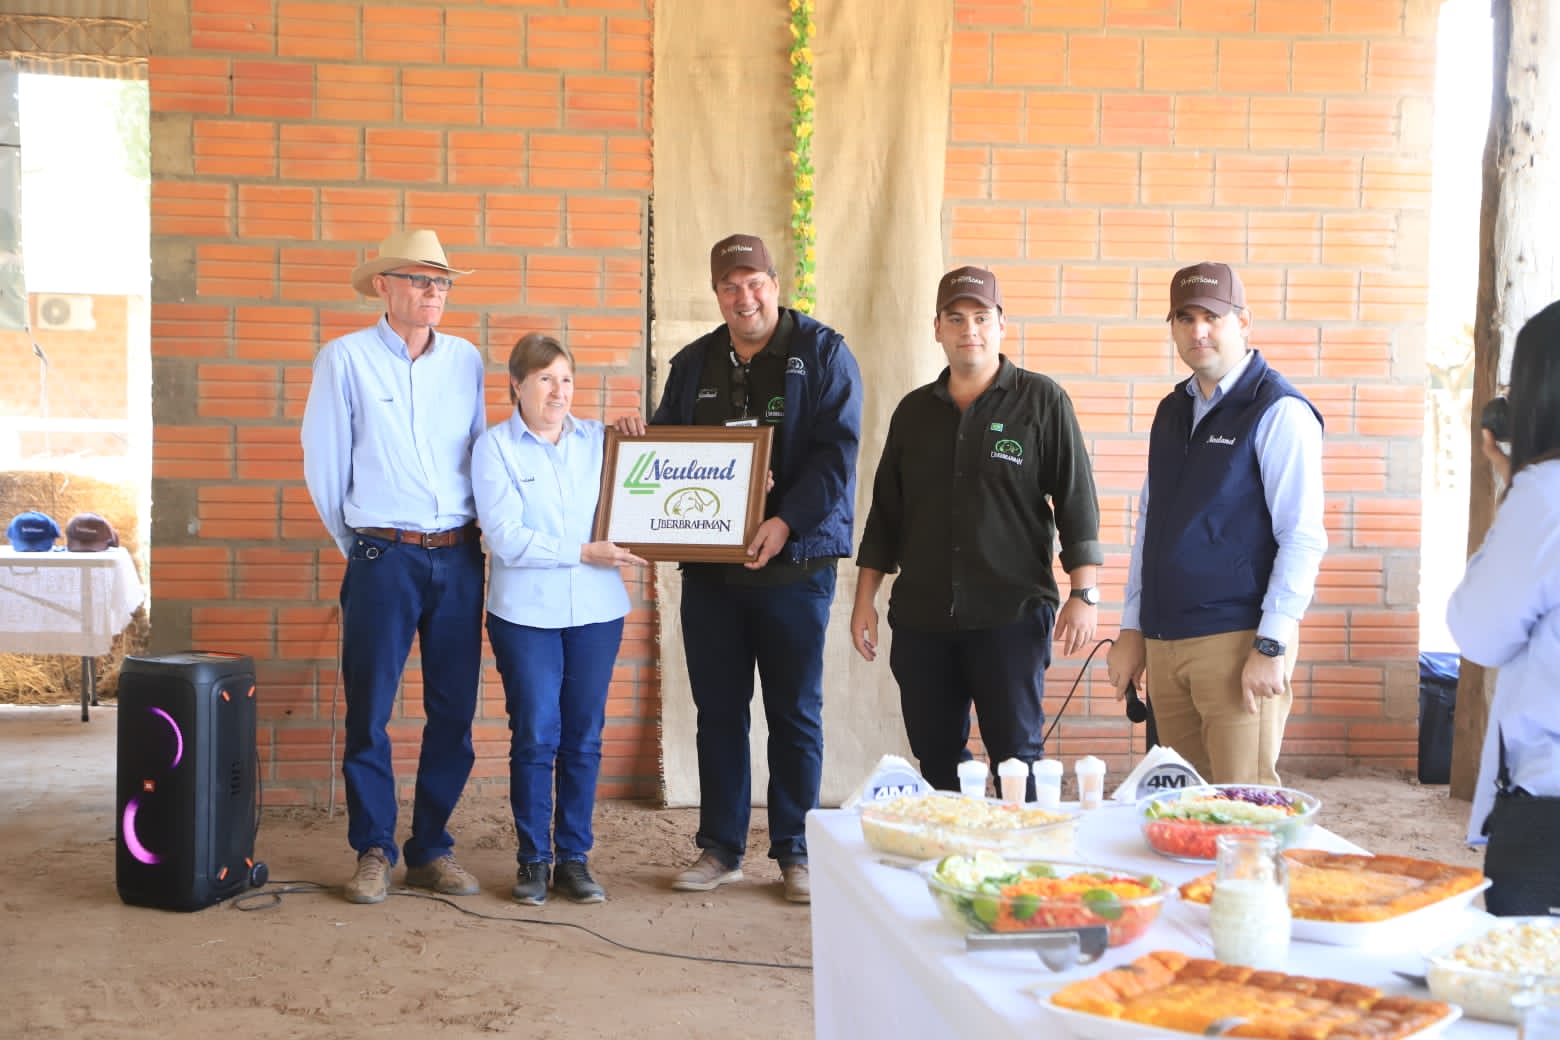 O criatório Uberbrahman apresentou seu projeto pecuário durante evento ocorrido no Chaco